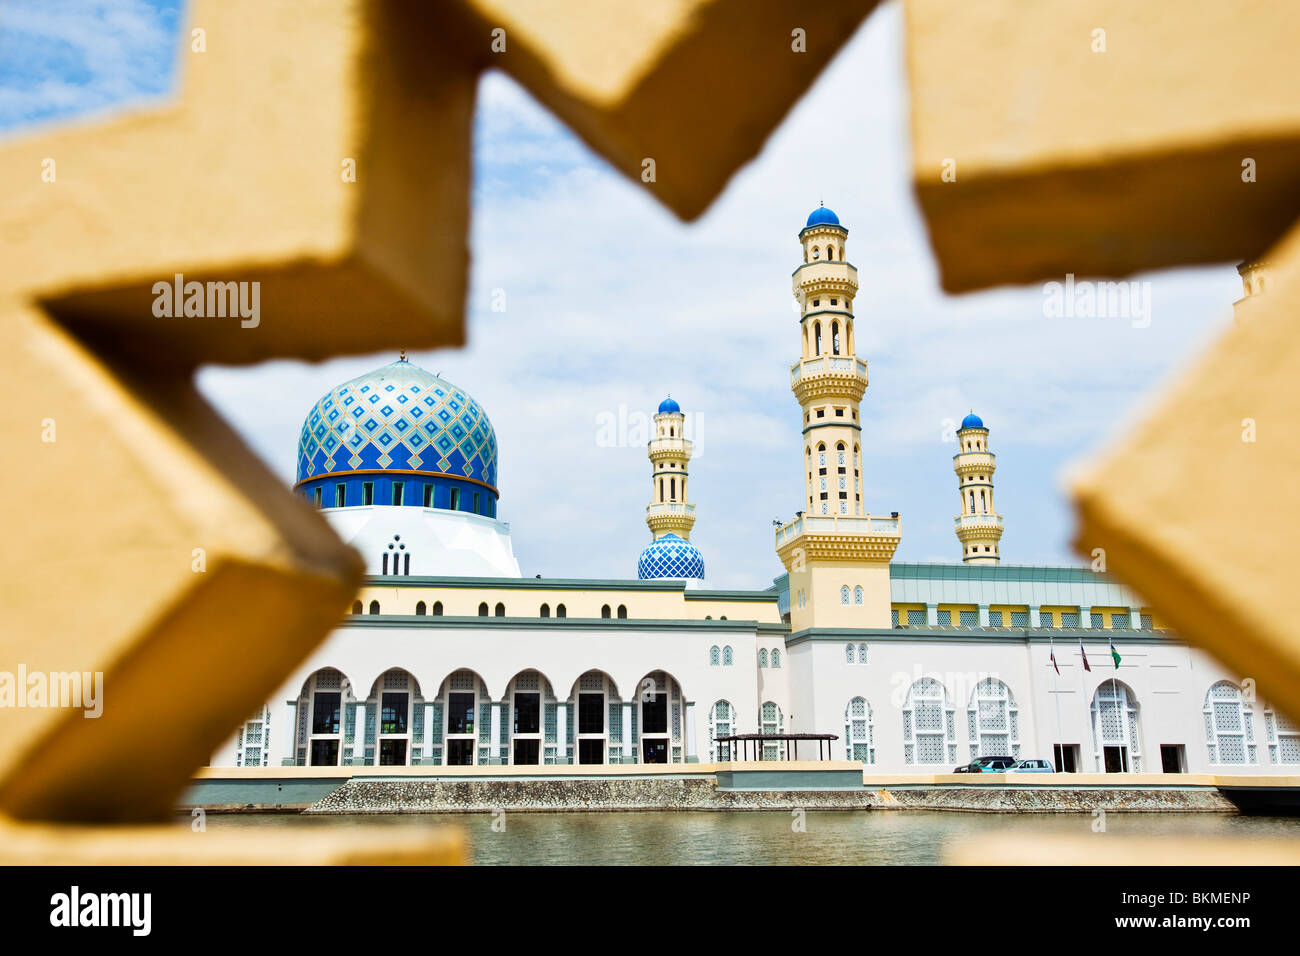 La mosquée de la ville de Kota Kinabalu encadrée par mur géométrique. Likas Bay, Kota Kinabalu, Sabah, Bornéo, Malaisie. Banque D'Images